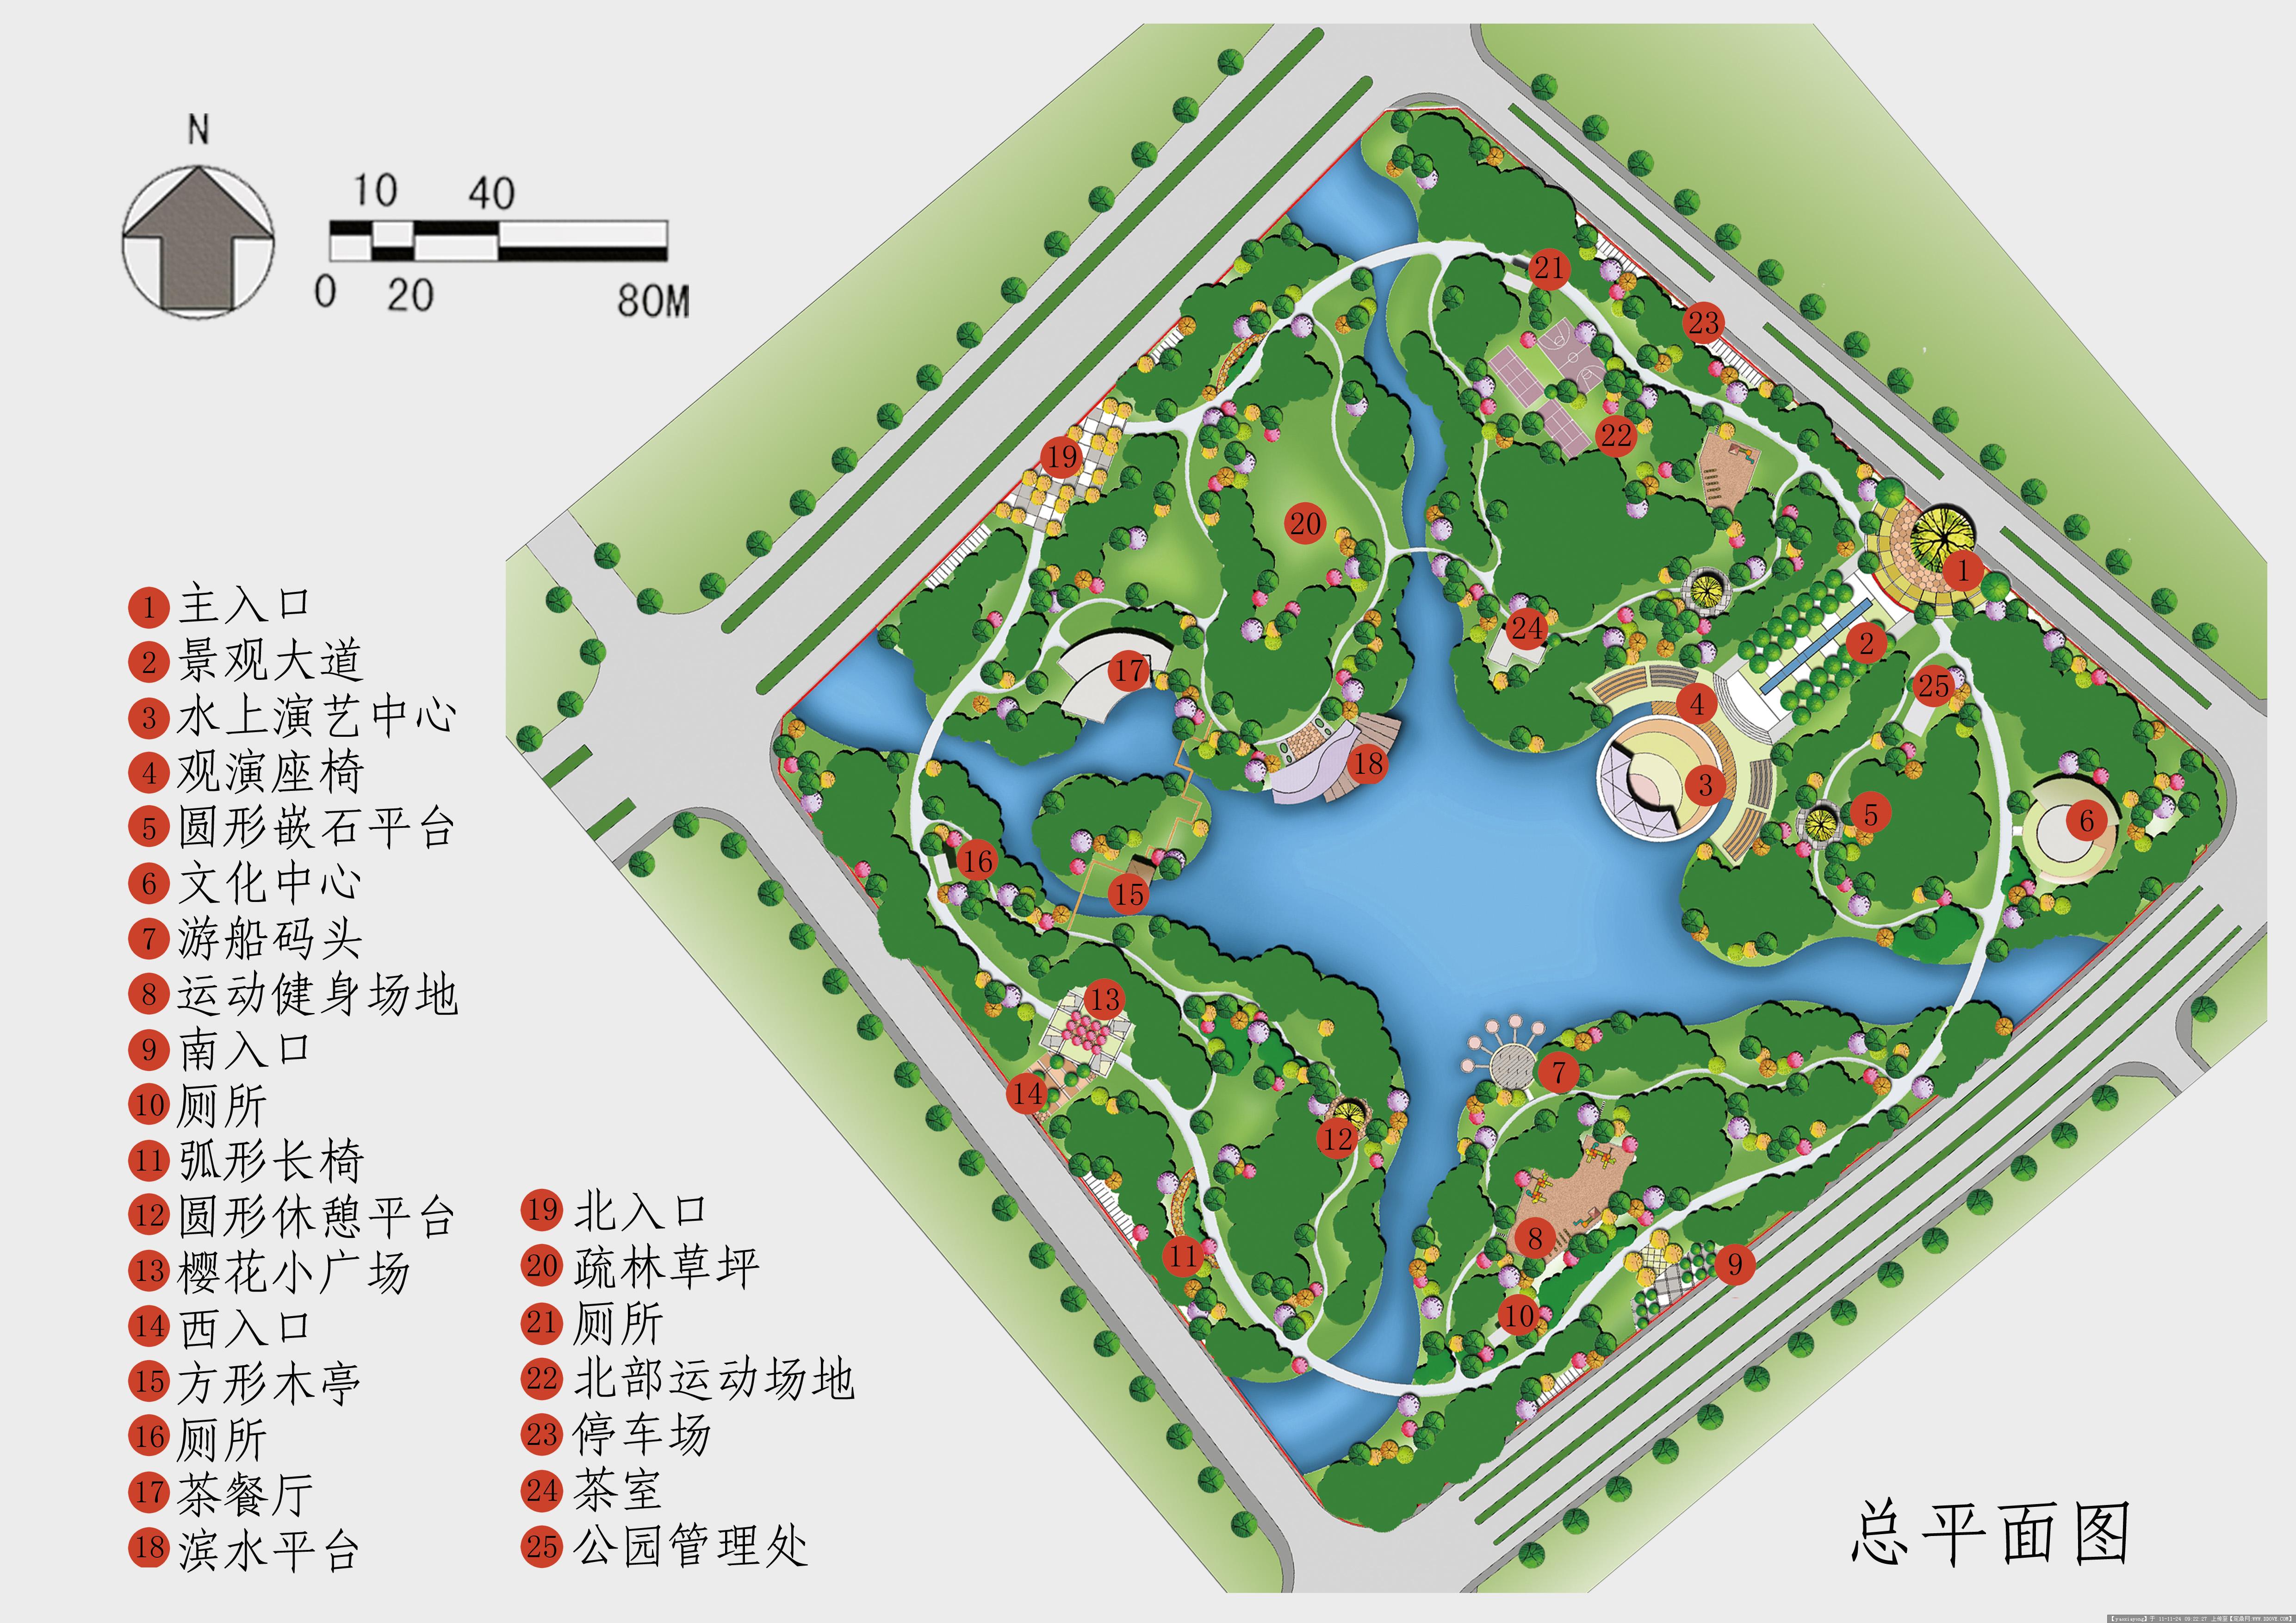 来看看北京经典园林平面图吧